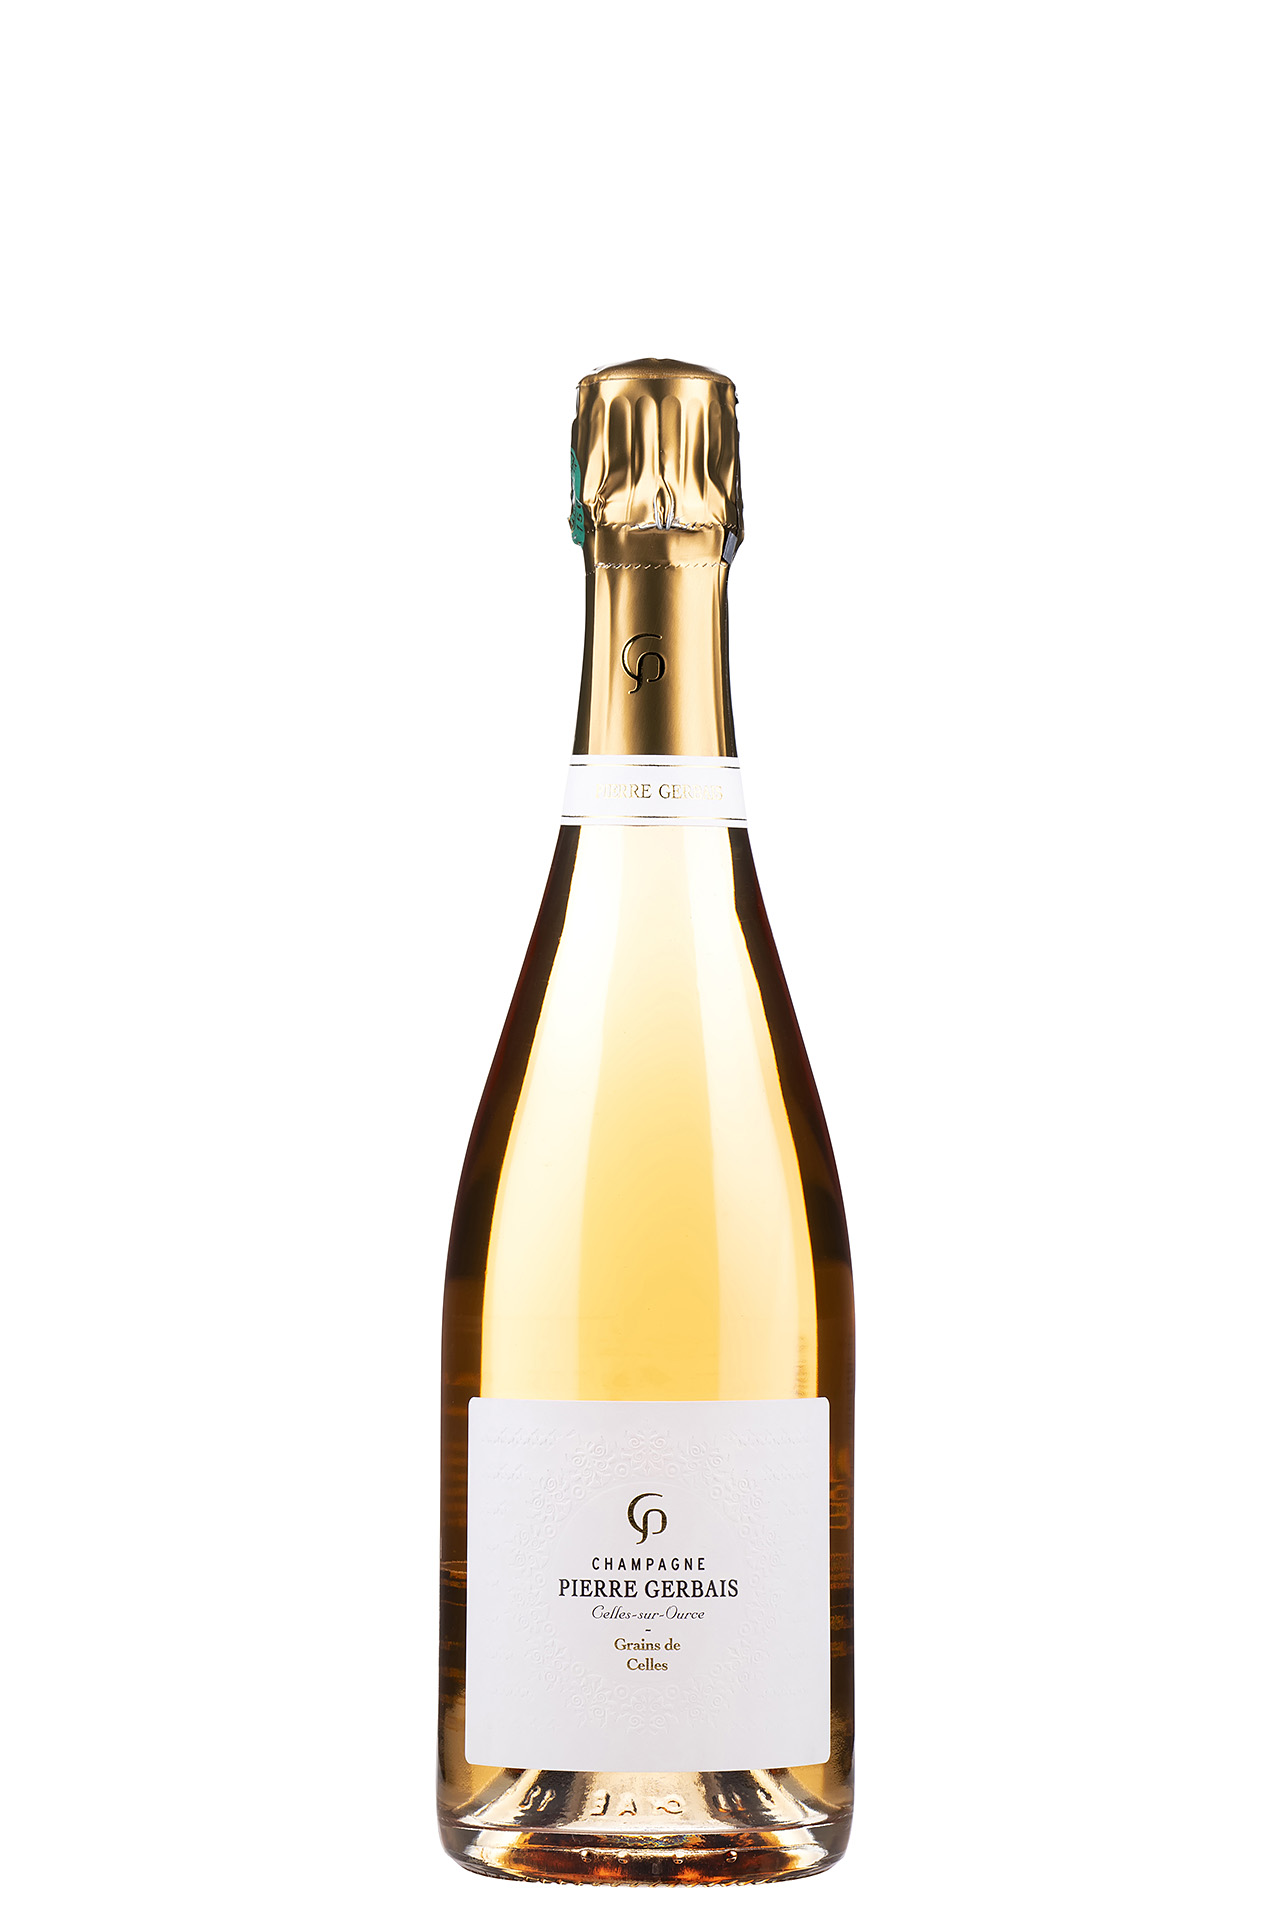 Champagne Grains de Celles Rose, Pierre Gerbais